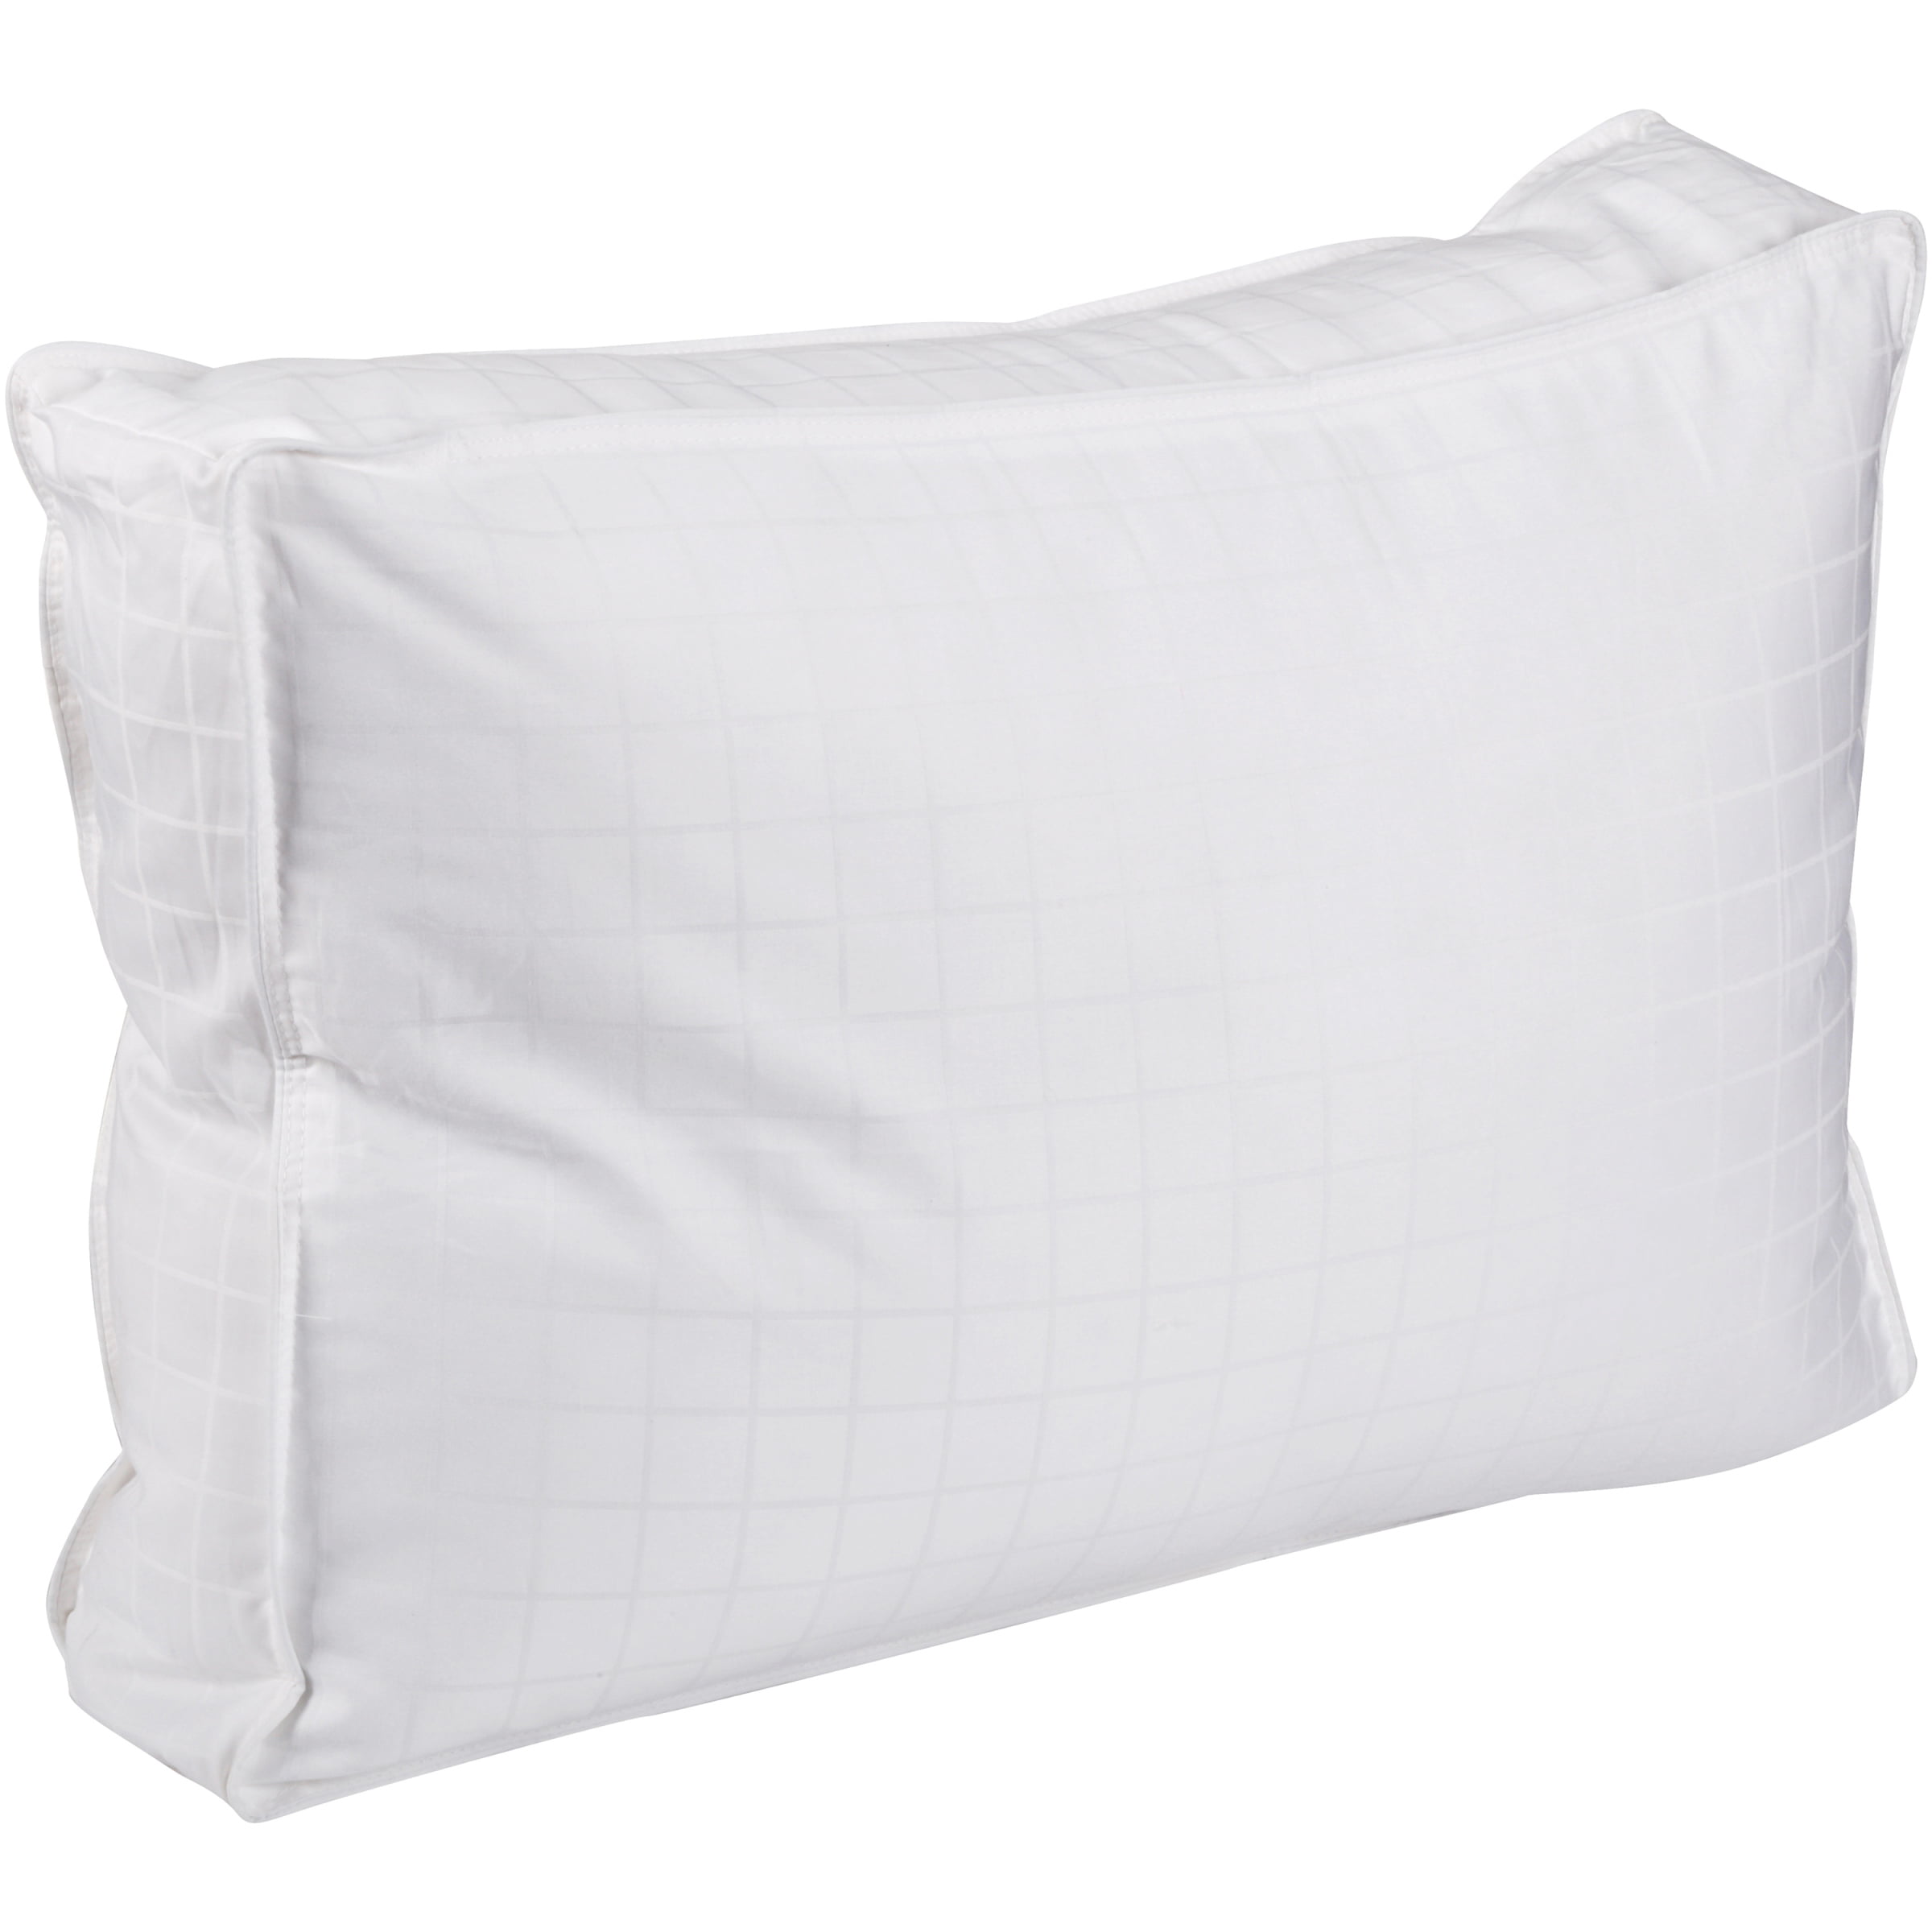 beyond down side sleeper pillow